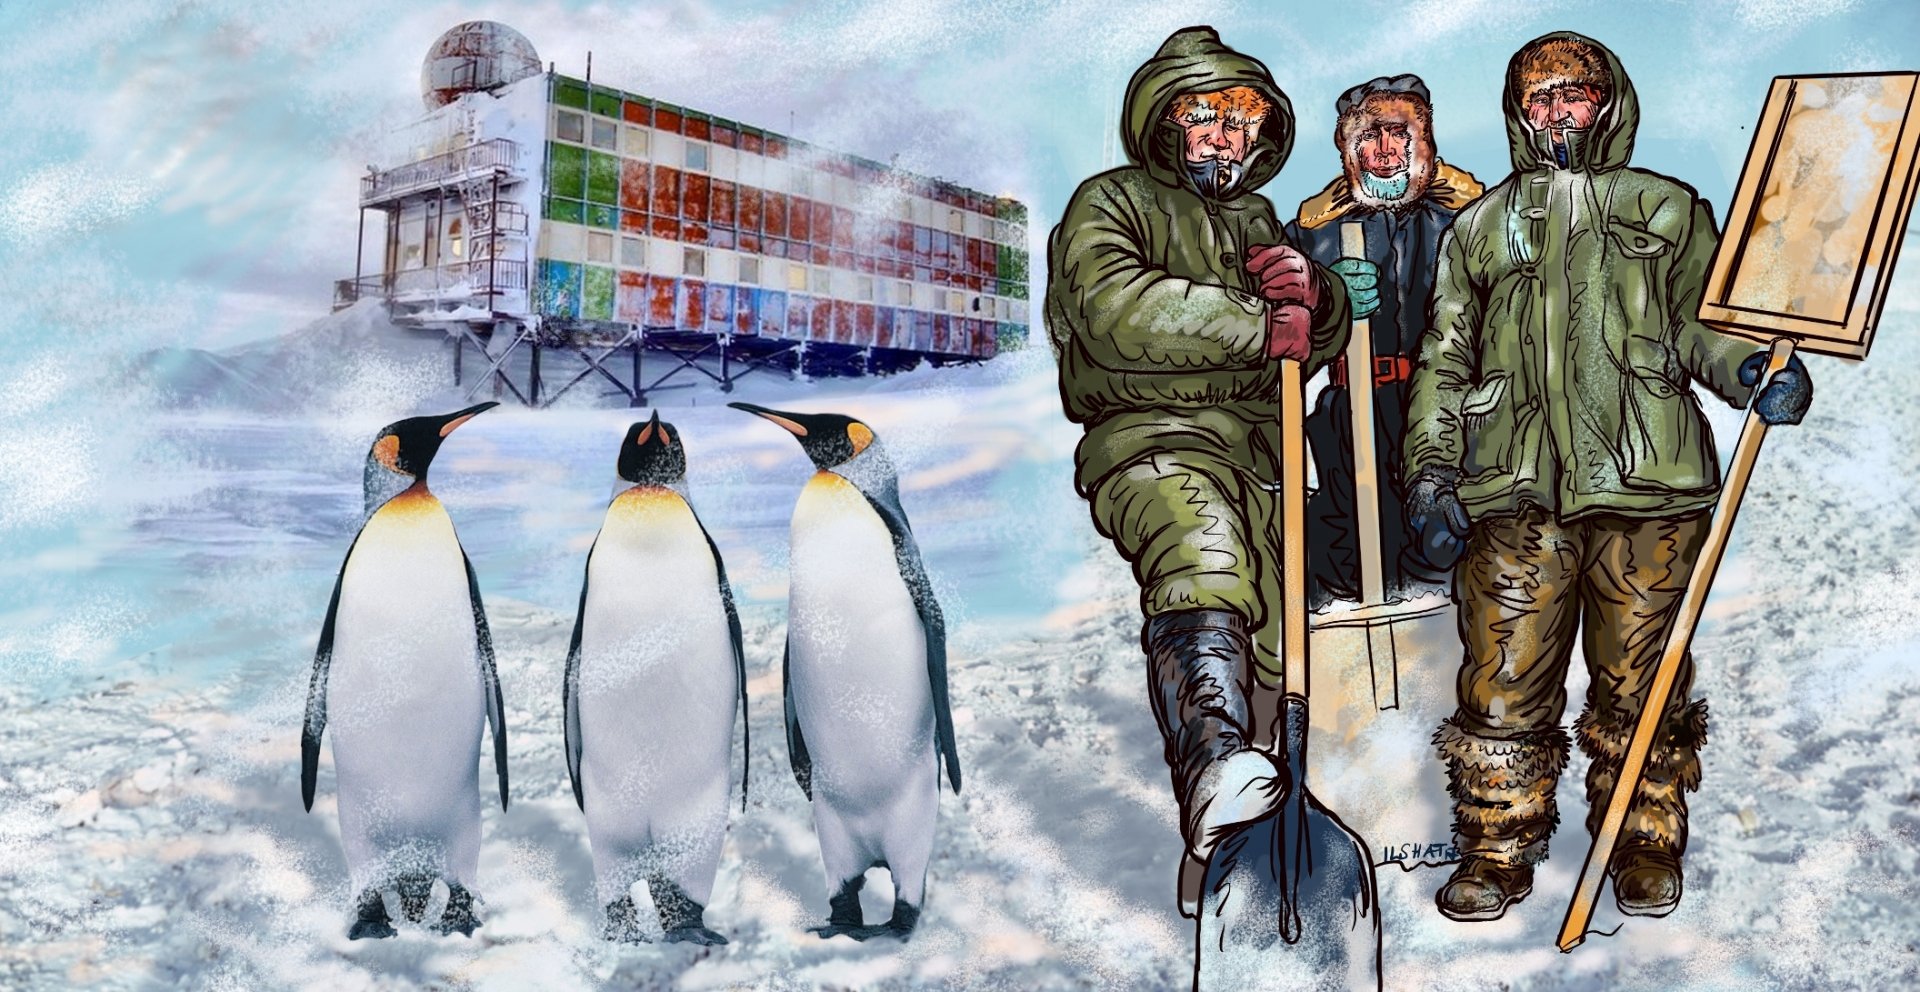 Полярники в Антарктиде